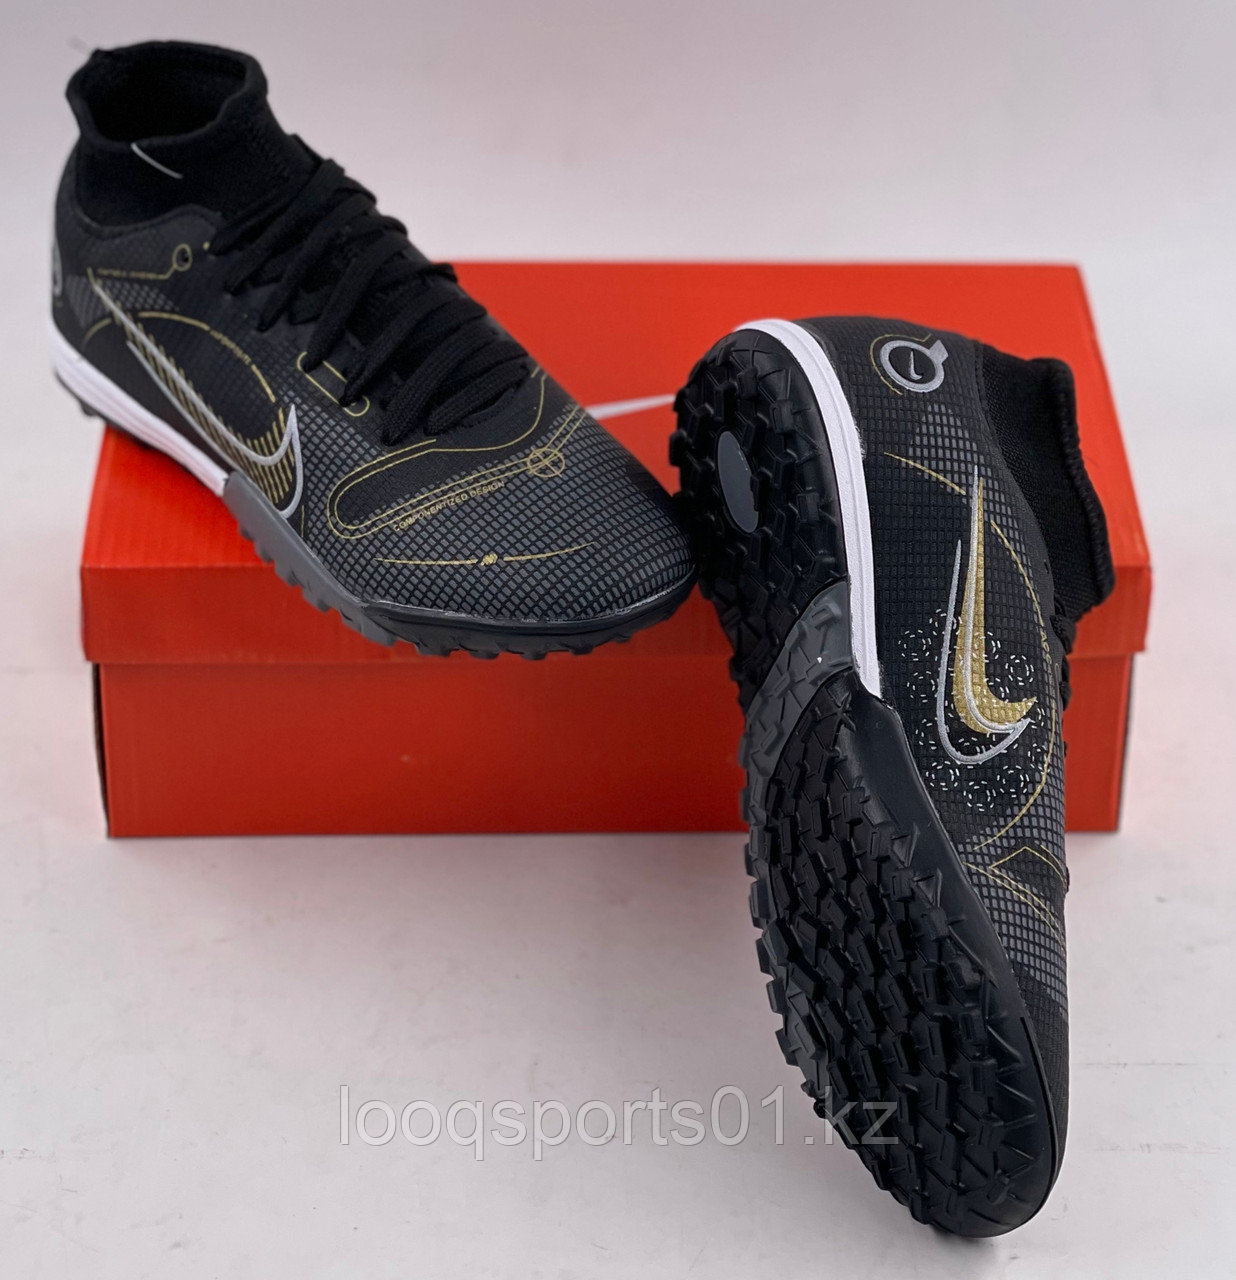 Nike футбольные бутсы сороконожки, миники (обувь для футбола)